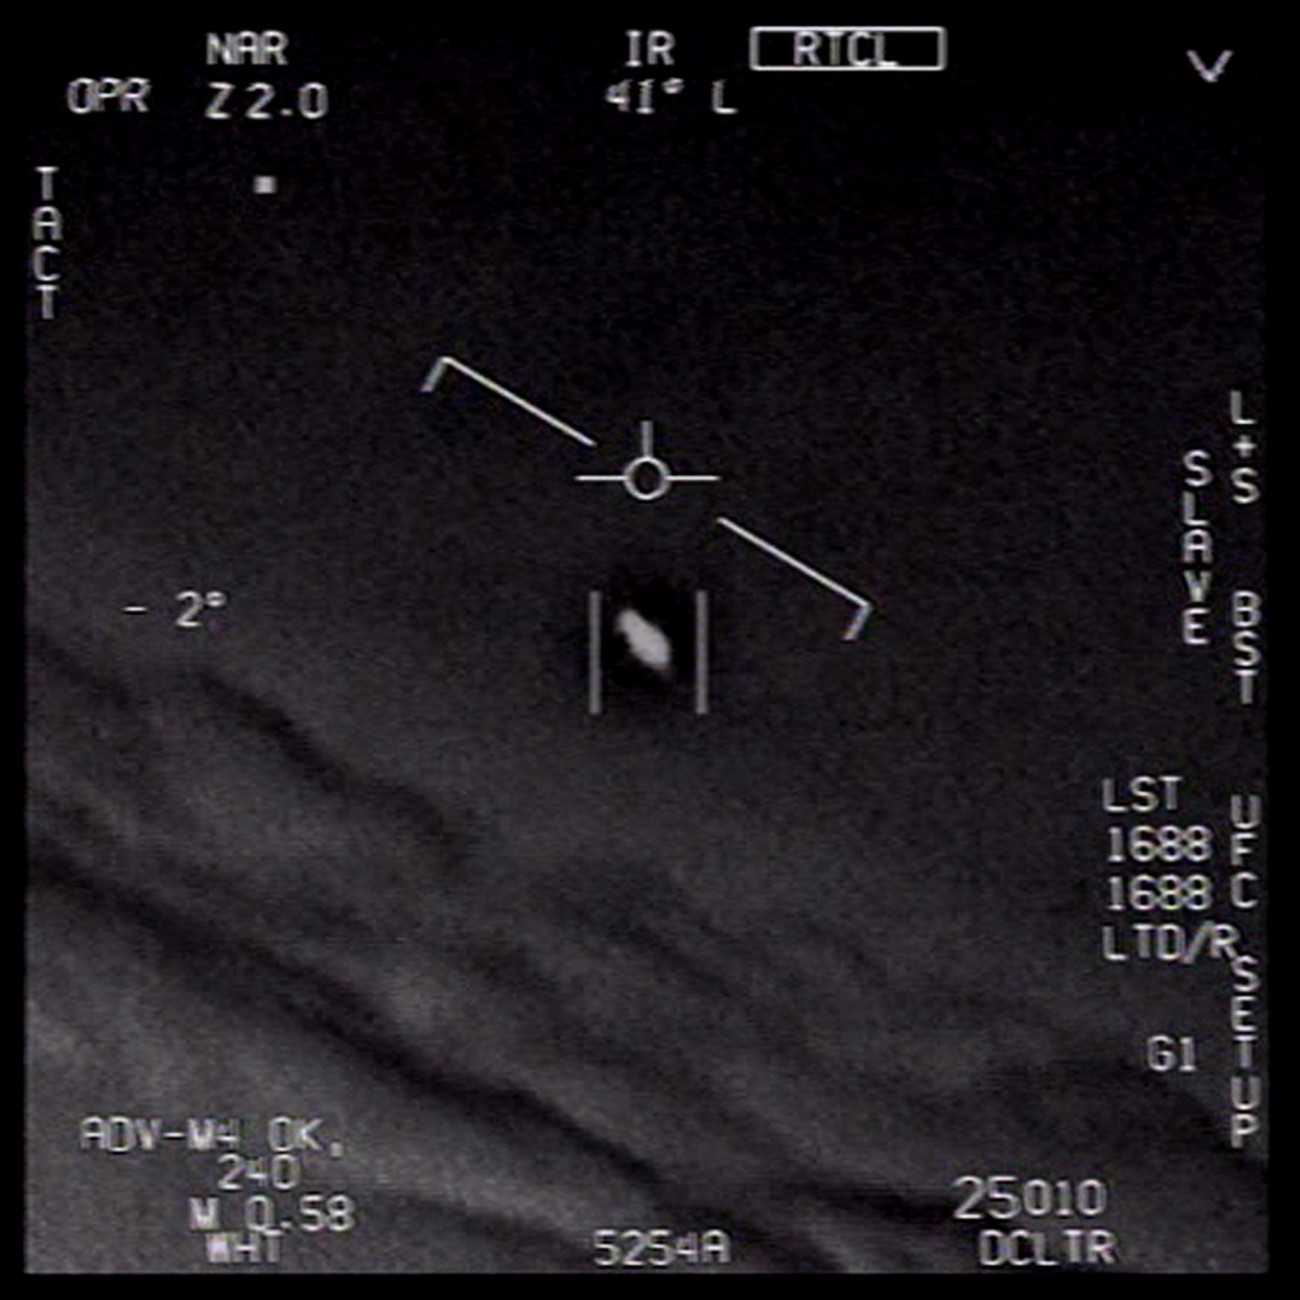 Az Amerikai Védelmi Minisztérium, a Pentagon által 2020. április 29-én közreadott, az Amerikai Haditengerészet videofelvételéről készített kép egy "azonosítatlan légi jelenségről" egy ismeretlen helyszínen. A minisztérium által közzétett három videofelvételen szereplő objektumokat a mai napig nem tudták azonosítani. A felvételeken egyébként 2004-es, illetve 2015-ös gyakorlórepülések során készített képek láthatóak | Fotó: MTI/EPA/Amerikai Védelmi Minisztérium/Amerikai Haditengerészet